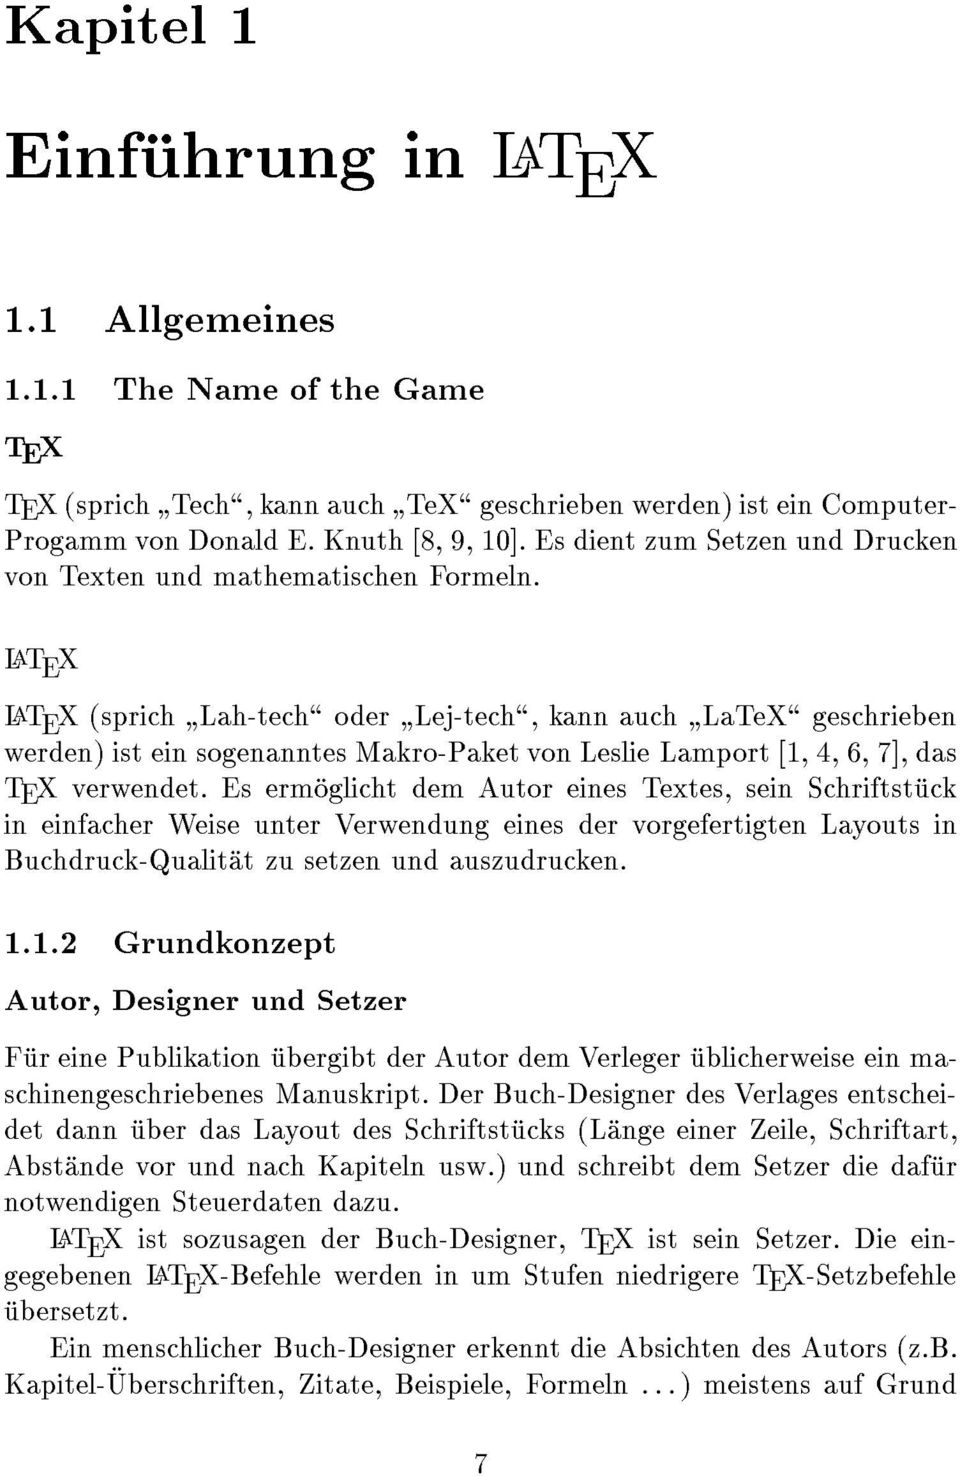 LaT E X LaT E X (sprich " Lah-tech\ oder " Lej-tech\, kann auch " LaTeX\ geschrieben werden) ist ein sogenanntes Makro-Paket von Leslie Lamport [1, 4, 6, 7], das TEX verwendet.